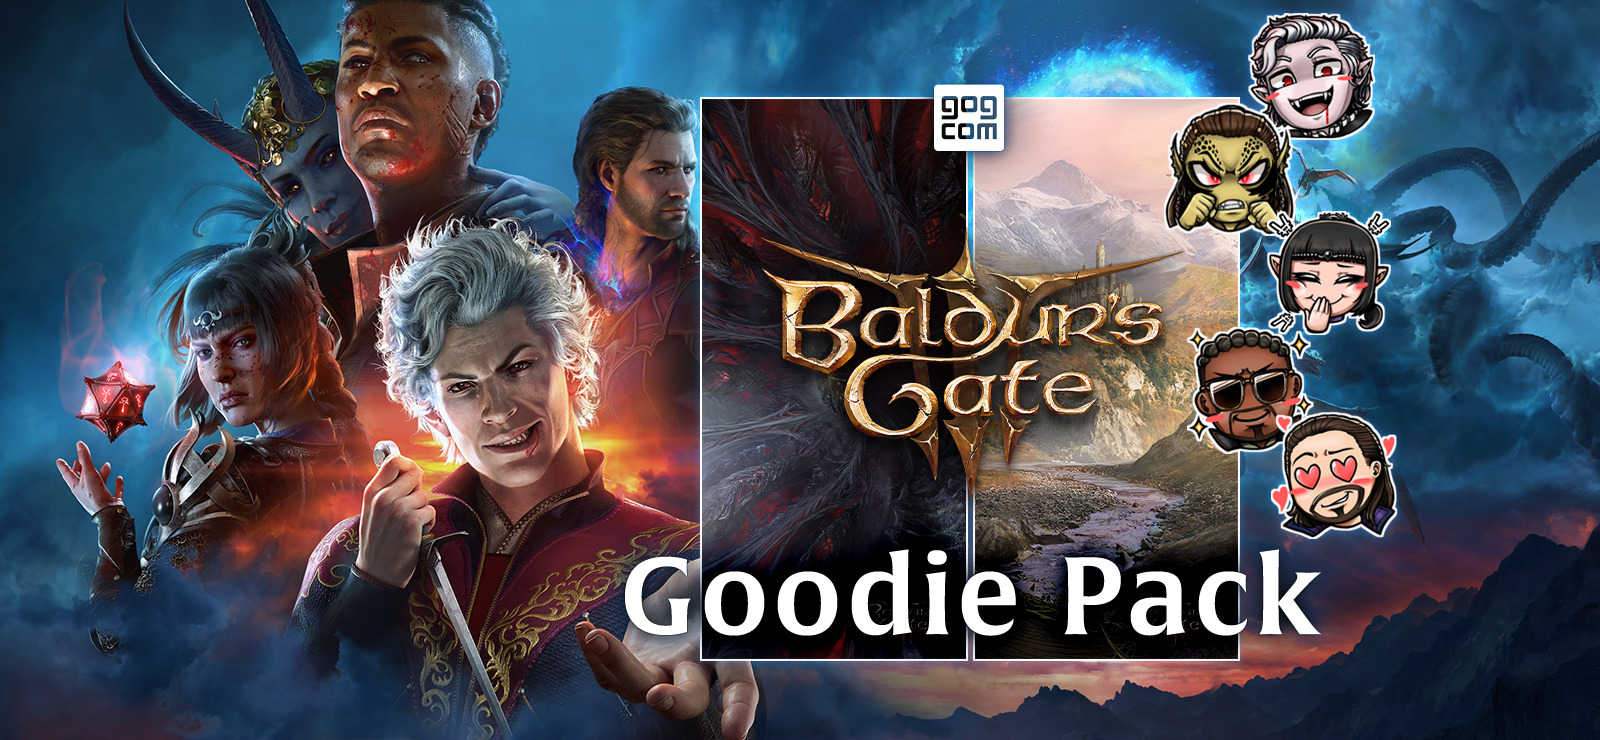 [限免] (GOG) 《Baldur’s Gate 3》Goodie Pack